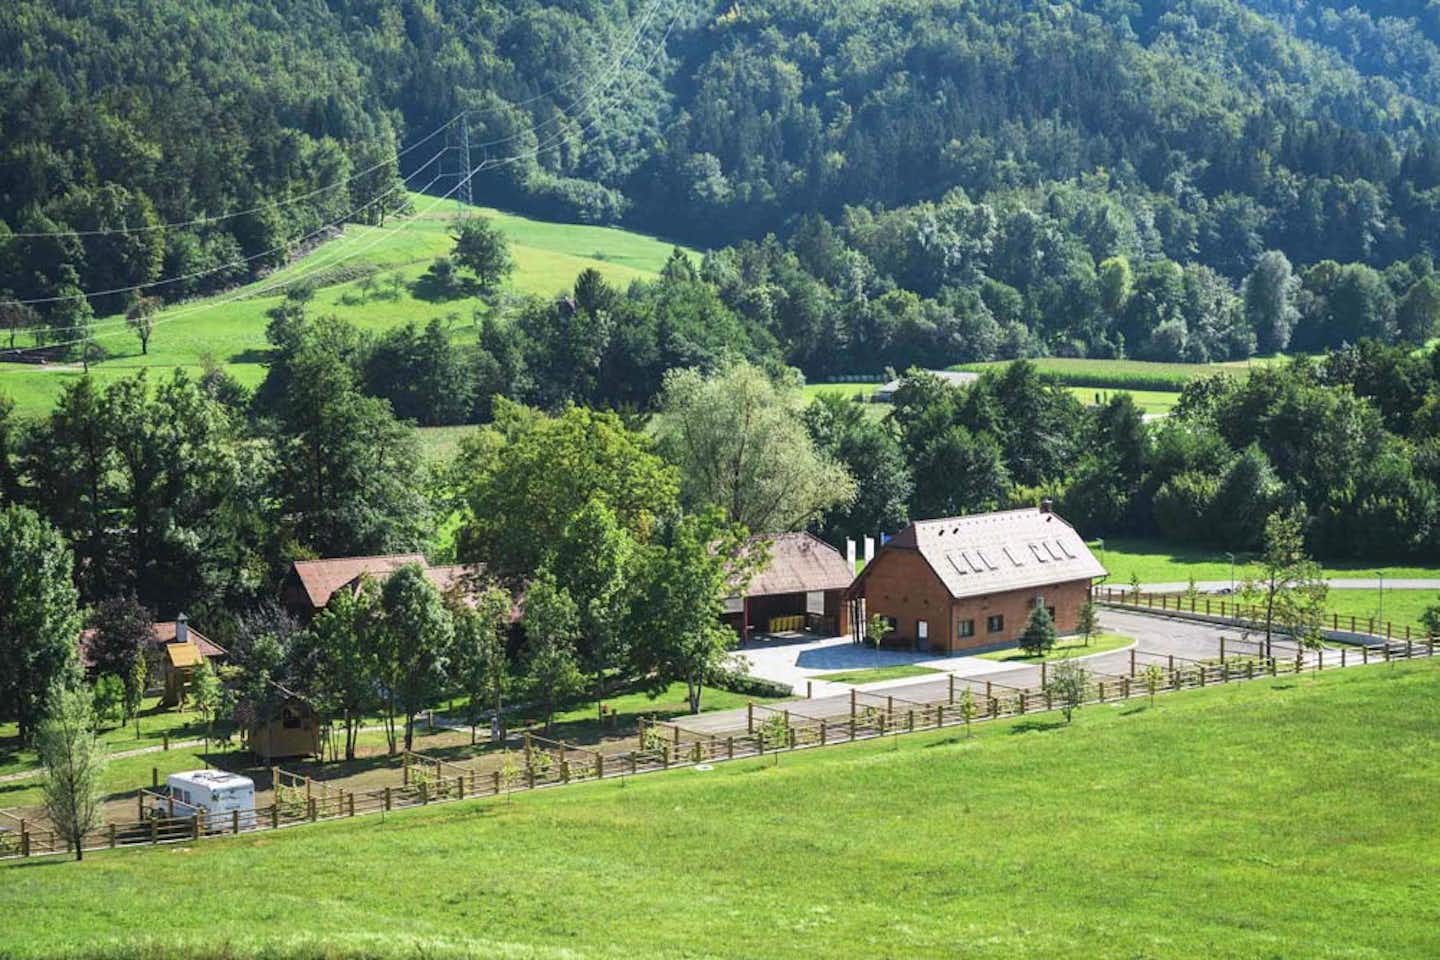 Camp Podgrad-Vransko  -  Luftaufnahme vom Campingplatz in den grünen Bergen von Slowenien